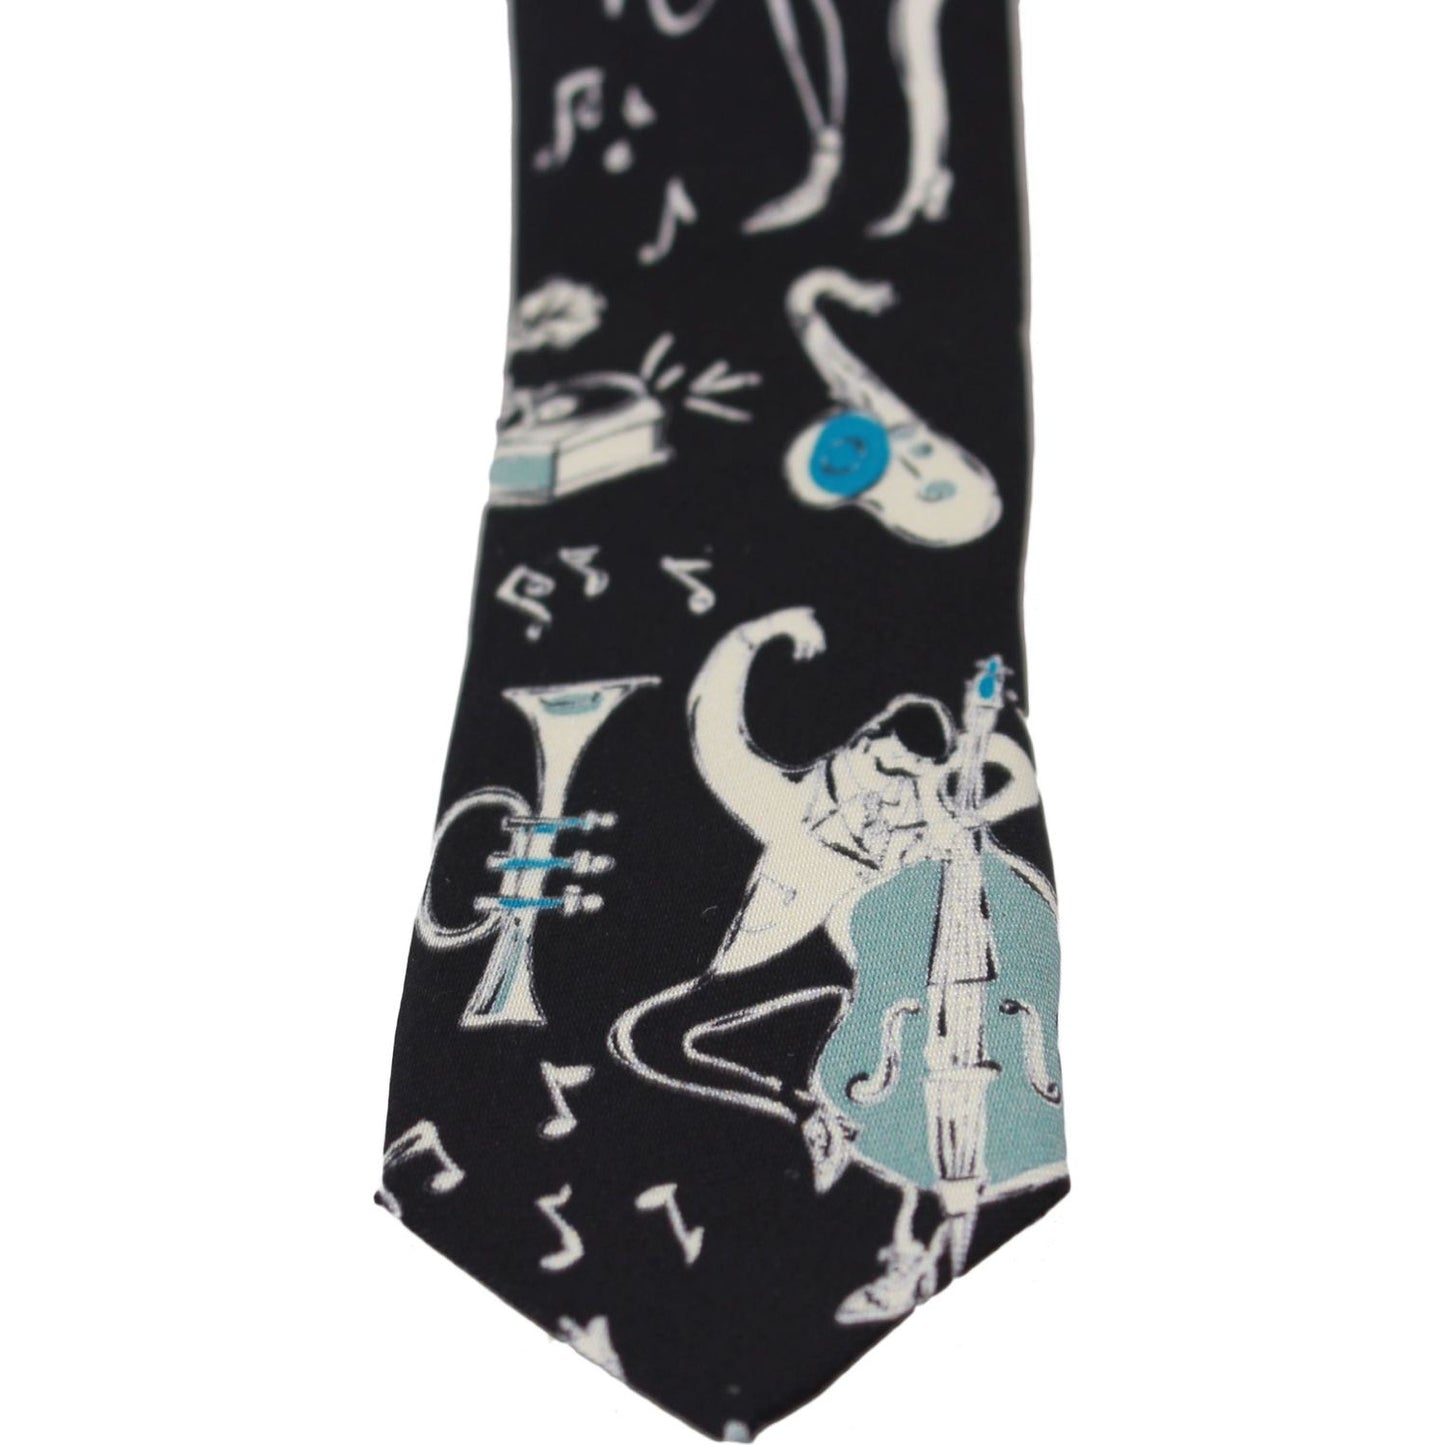 Dolce & Gabbana Elegant Black Music Pattern Silk Neck Tie black-100-silk-musical-isntrument-print-classic-tie Necktie IMG_1596-scaled-93d14c80-ad9.jpg